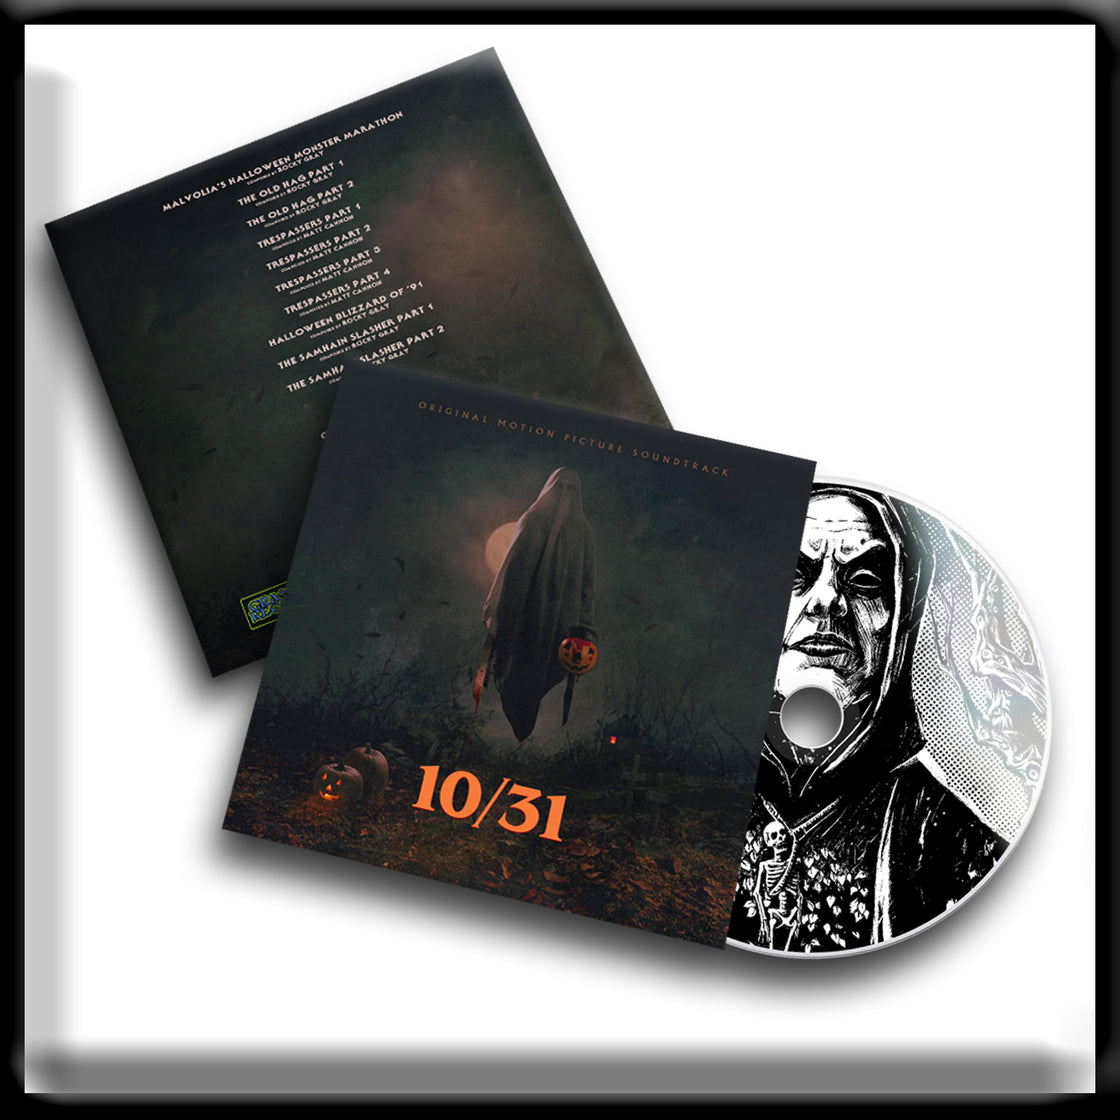 10/31 Soundtrack - CD